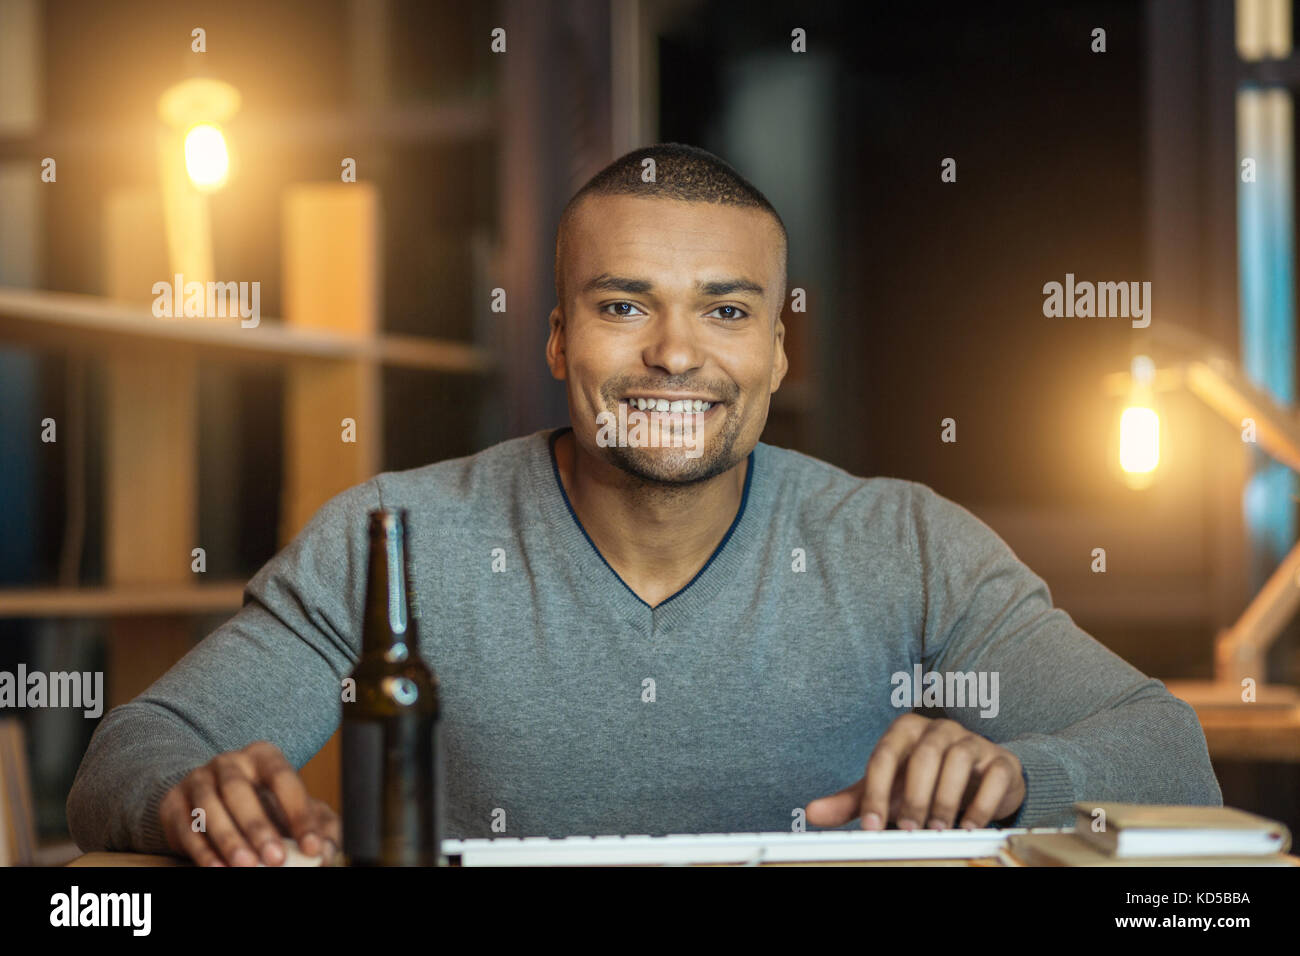 Portrait of smiling personne de sexe masculin que de poser sur l'appareil photo Banque D'Images